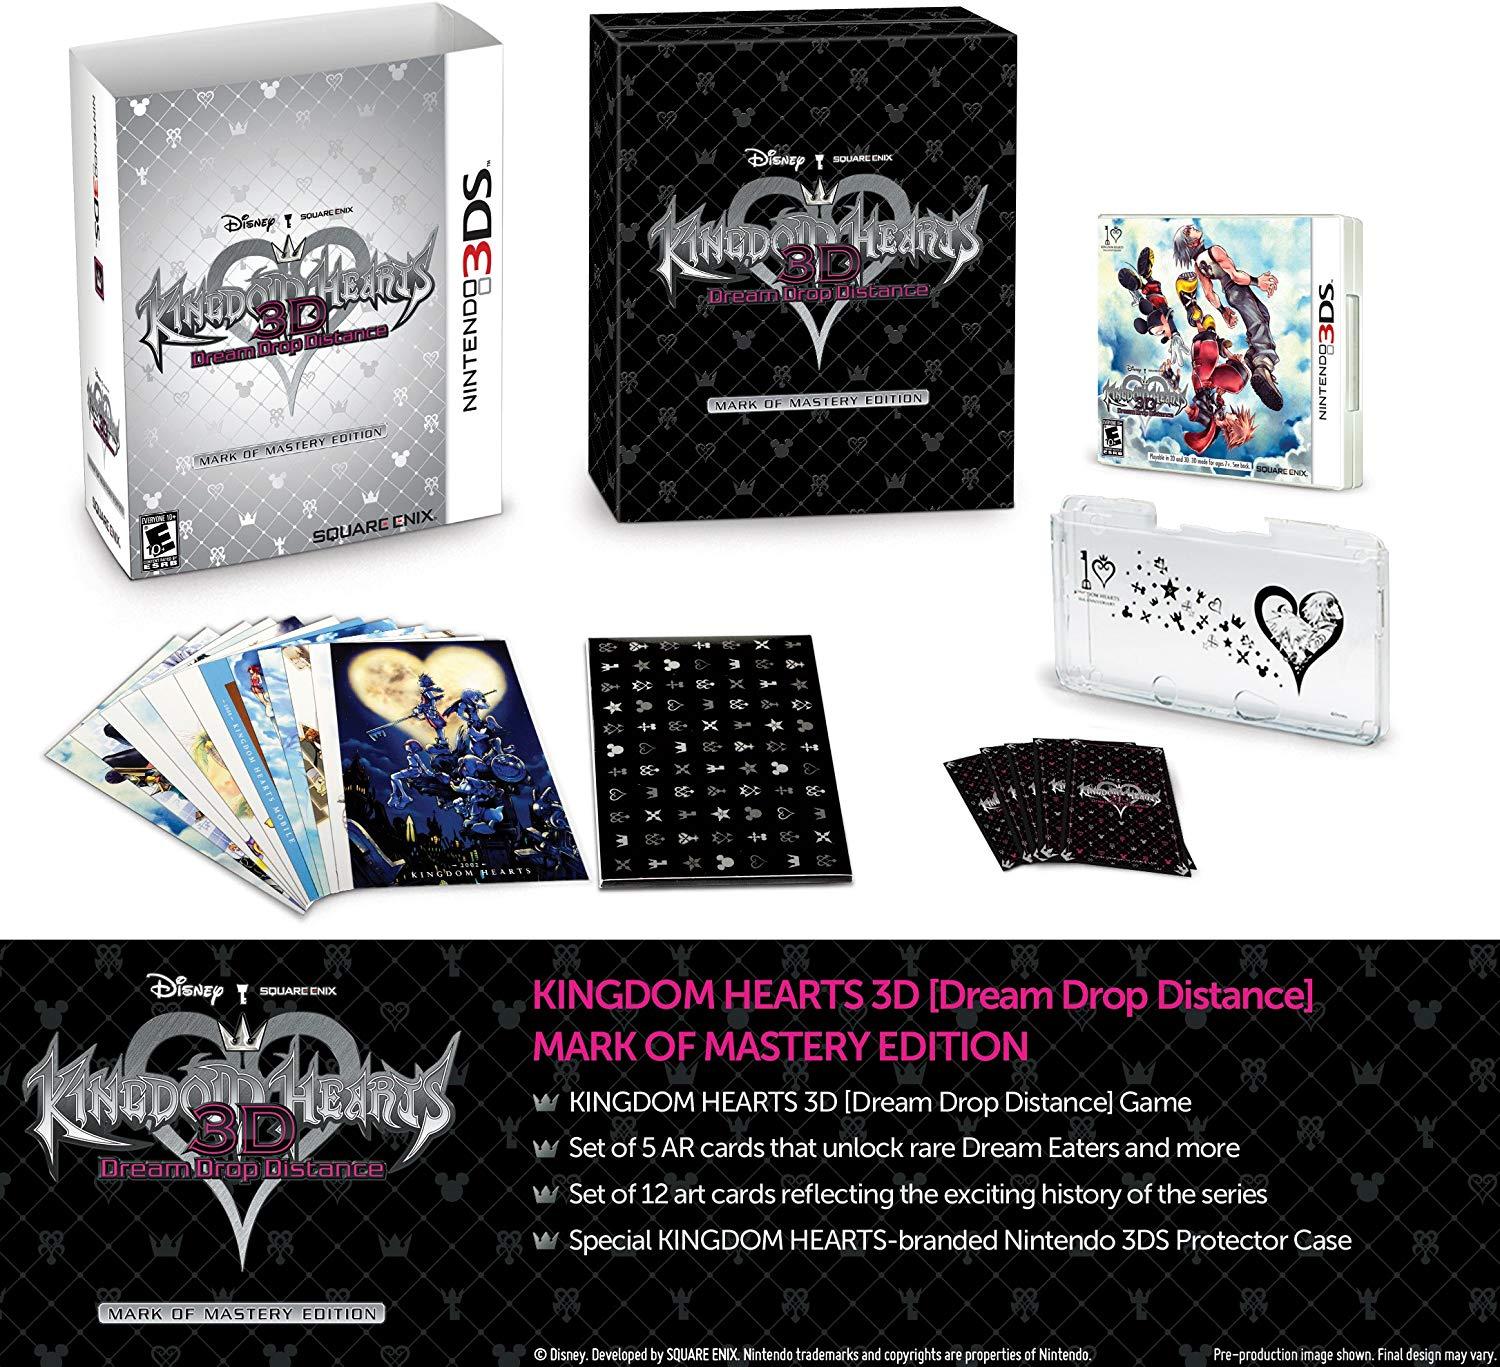 Dream Drop Logo - Amazon.com: Kingdom Hearts 3D Dream Drop Distance - Collector's ...